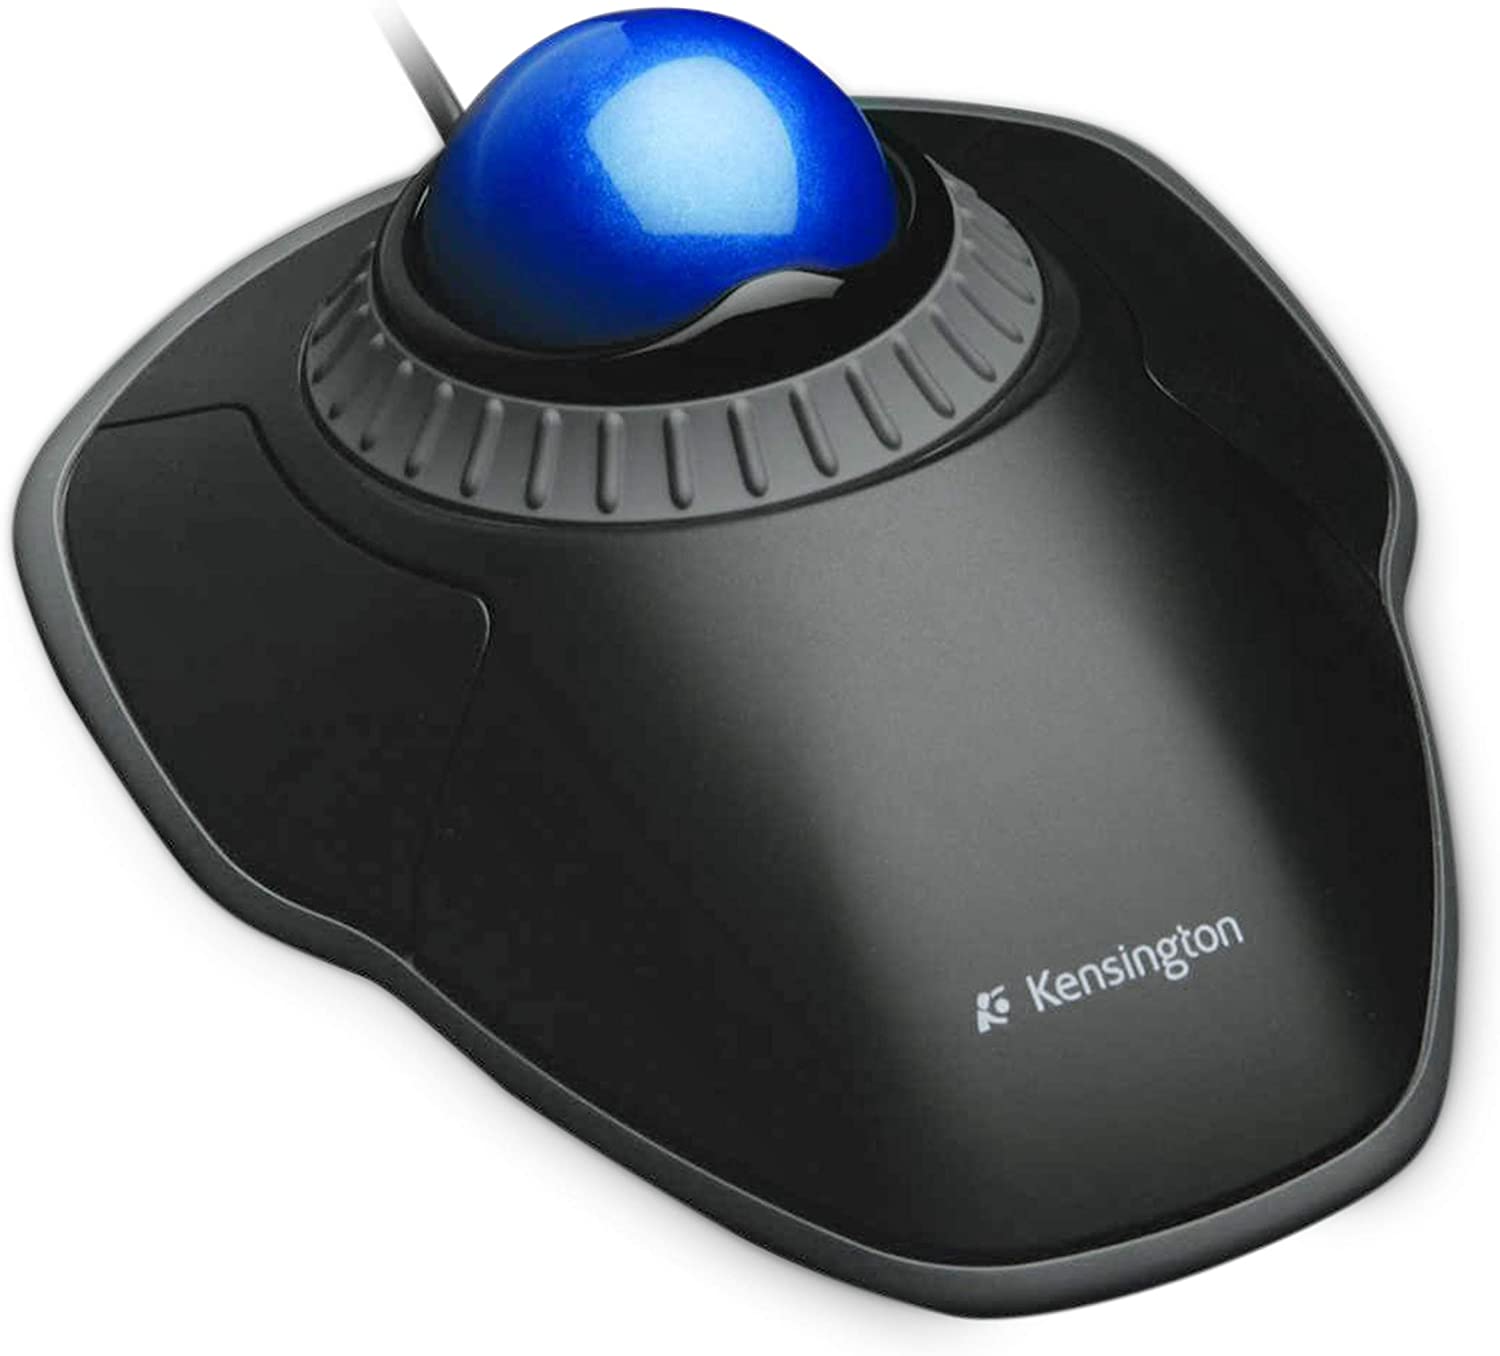 Kensington Orbit 마우스 - 스크롤 링, 양면 디자인 및 광학 추적 기능이 있는 PC, Mac 및 Windows용 유선 인체공학 트랙볼 마우스 - 파란색(K72337)EU)